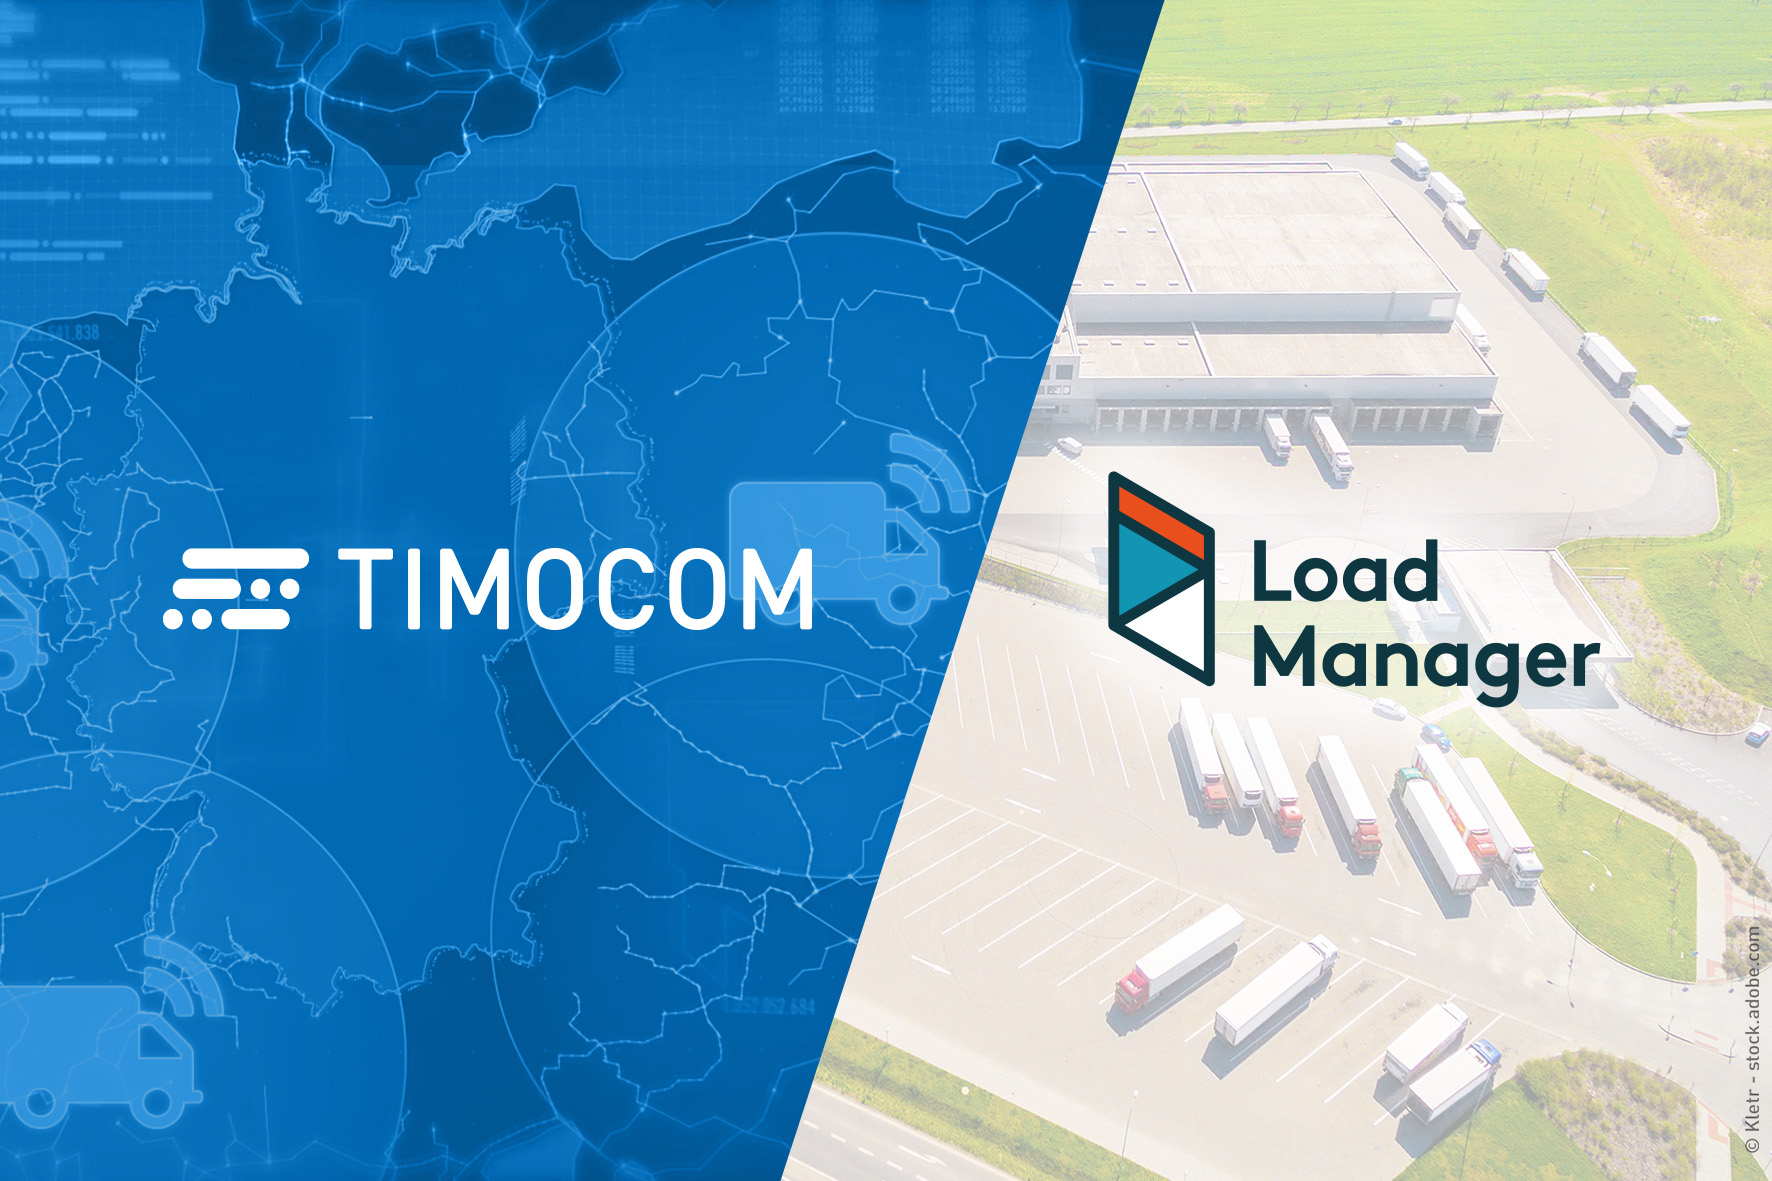 TimoCom-Load Manager: una nuova collaborazione per garantire maggior efficienza e minori tempi di attesa